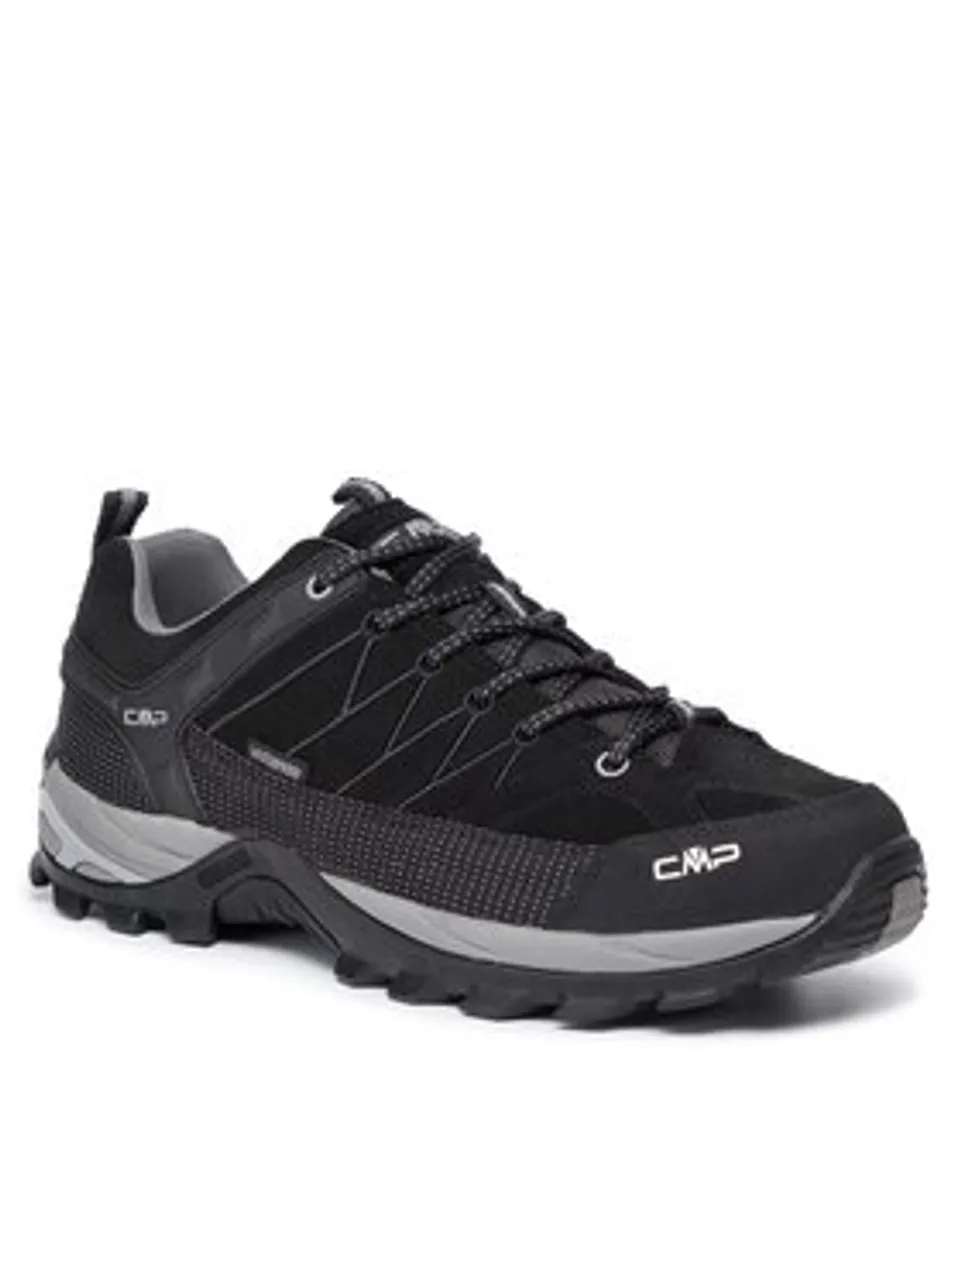 CMP Trekkingschuhe Rigel Low Trekking Shoes Wp 3Q13247 Schwarz